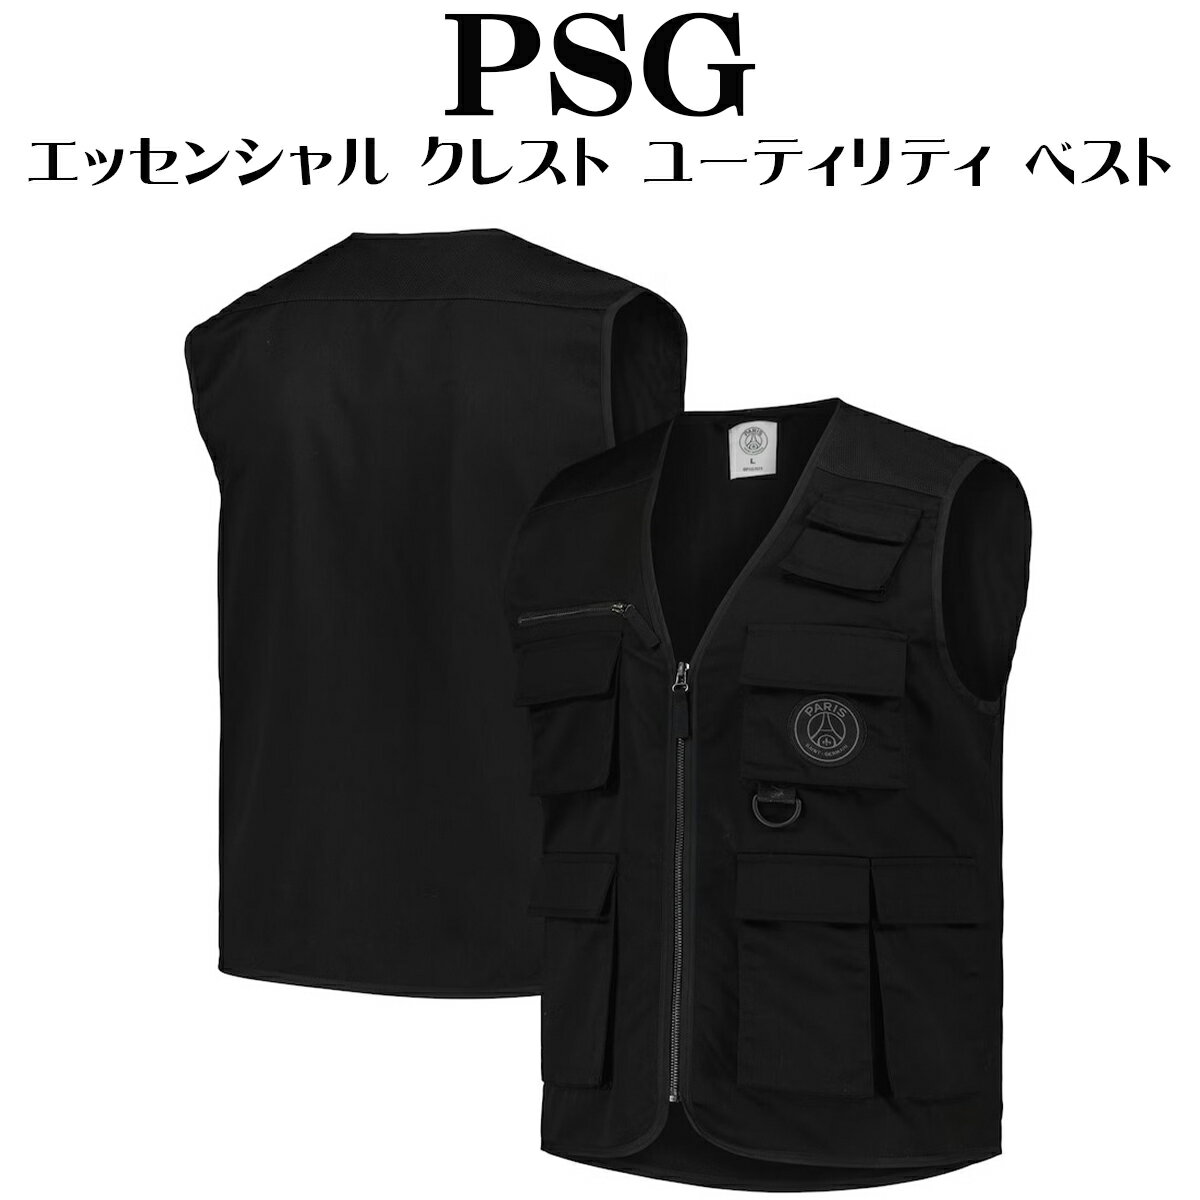 PSG ベスト ジャケット パリサンジェルマン USサイズ エッセンシャル クレスト ユーティリティ ベスト ブラック アウター ロゴ トップス メンズ ユニセックス 海外限定 ナイキ Jordan ジョーダン 正規品 衣類